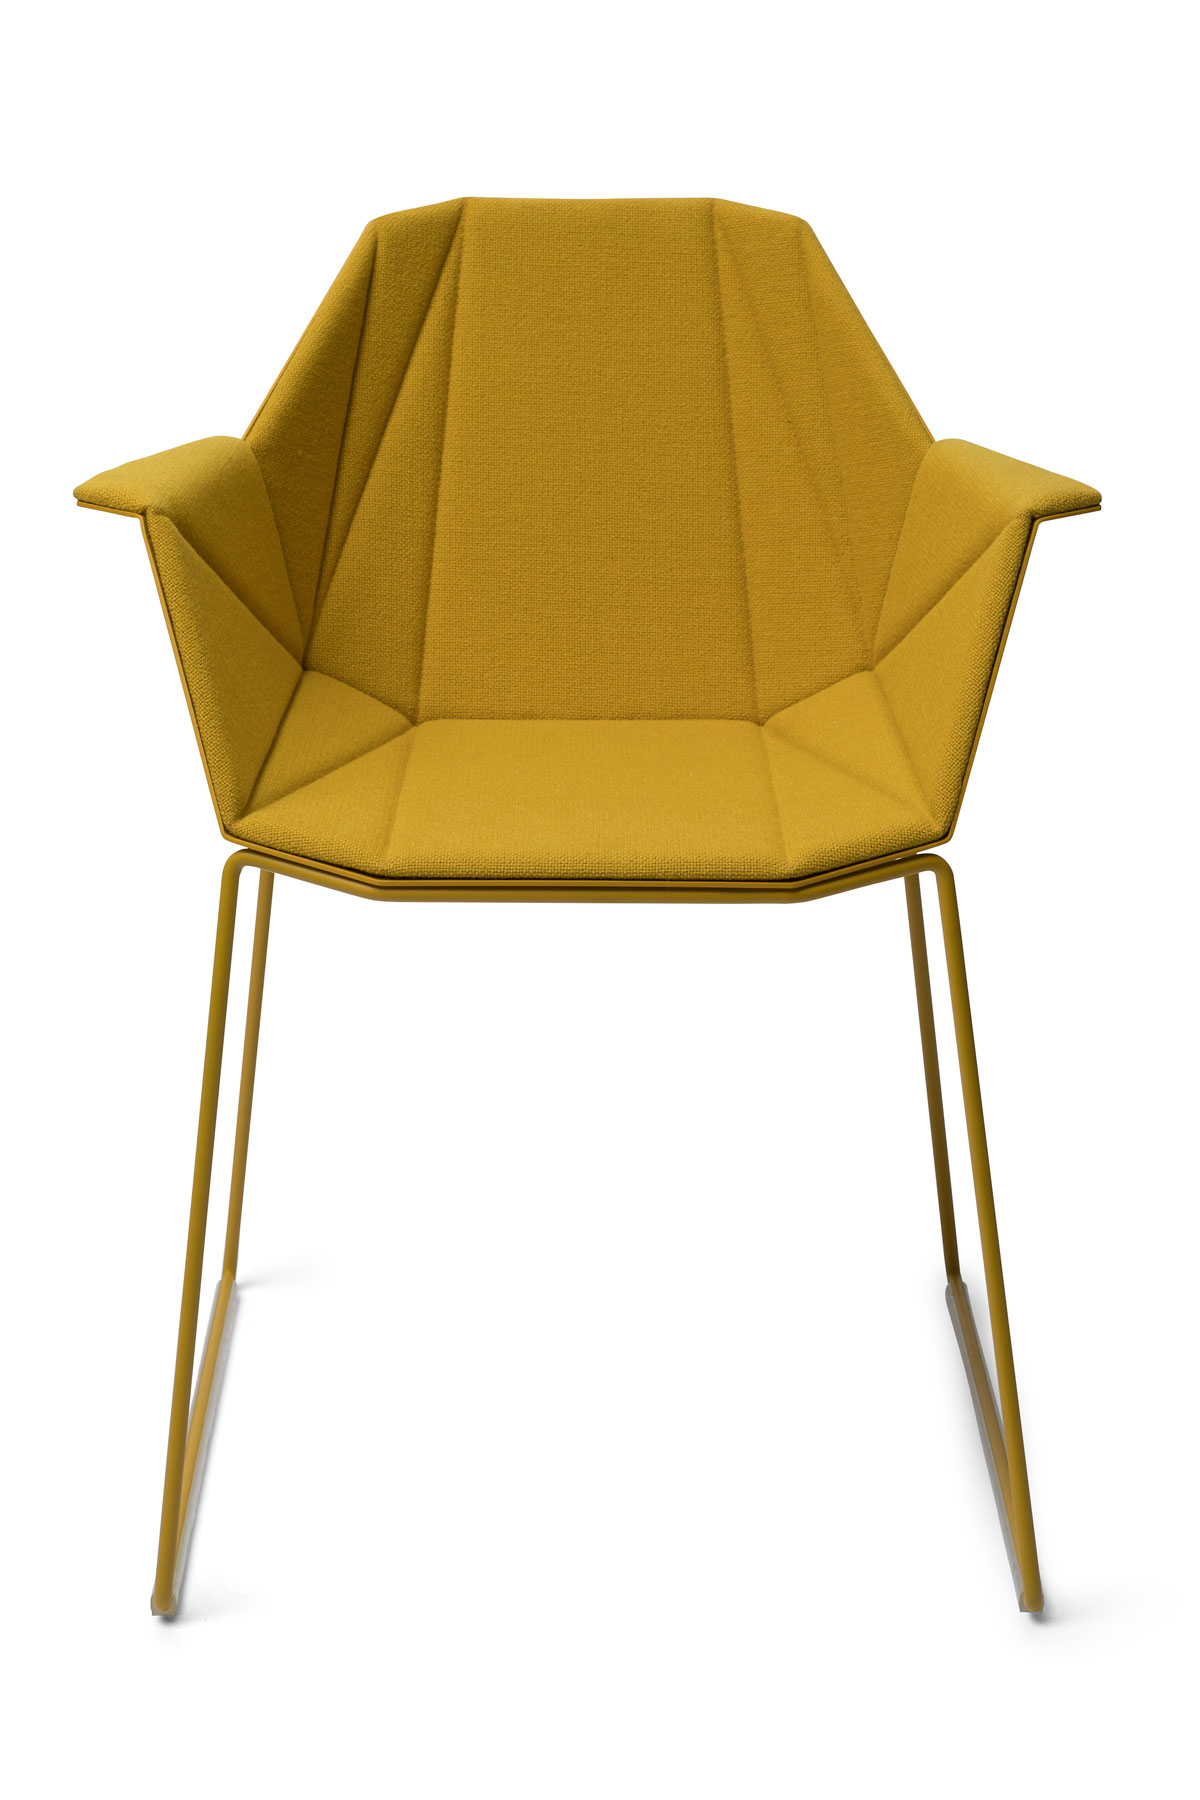 Alumni-Sledge-ochreous-yellow-upholstered_front.jpg